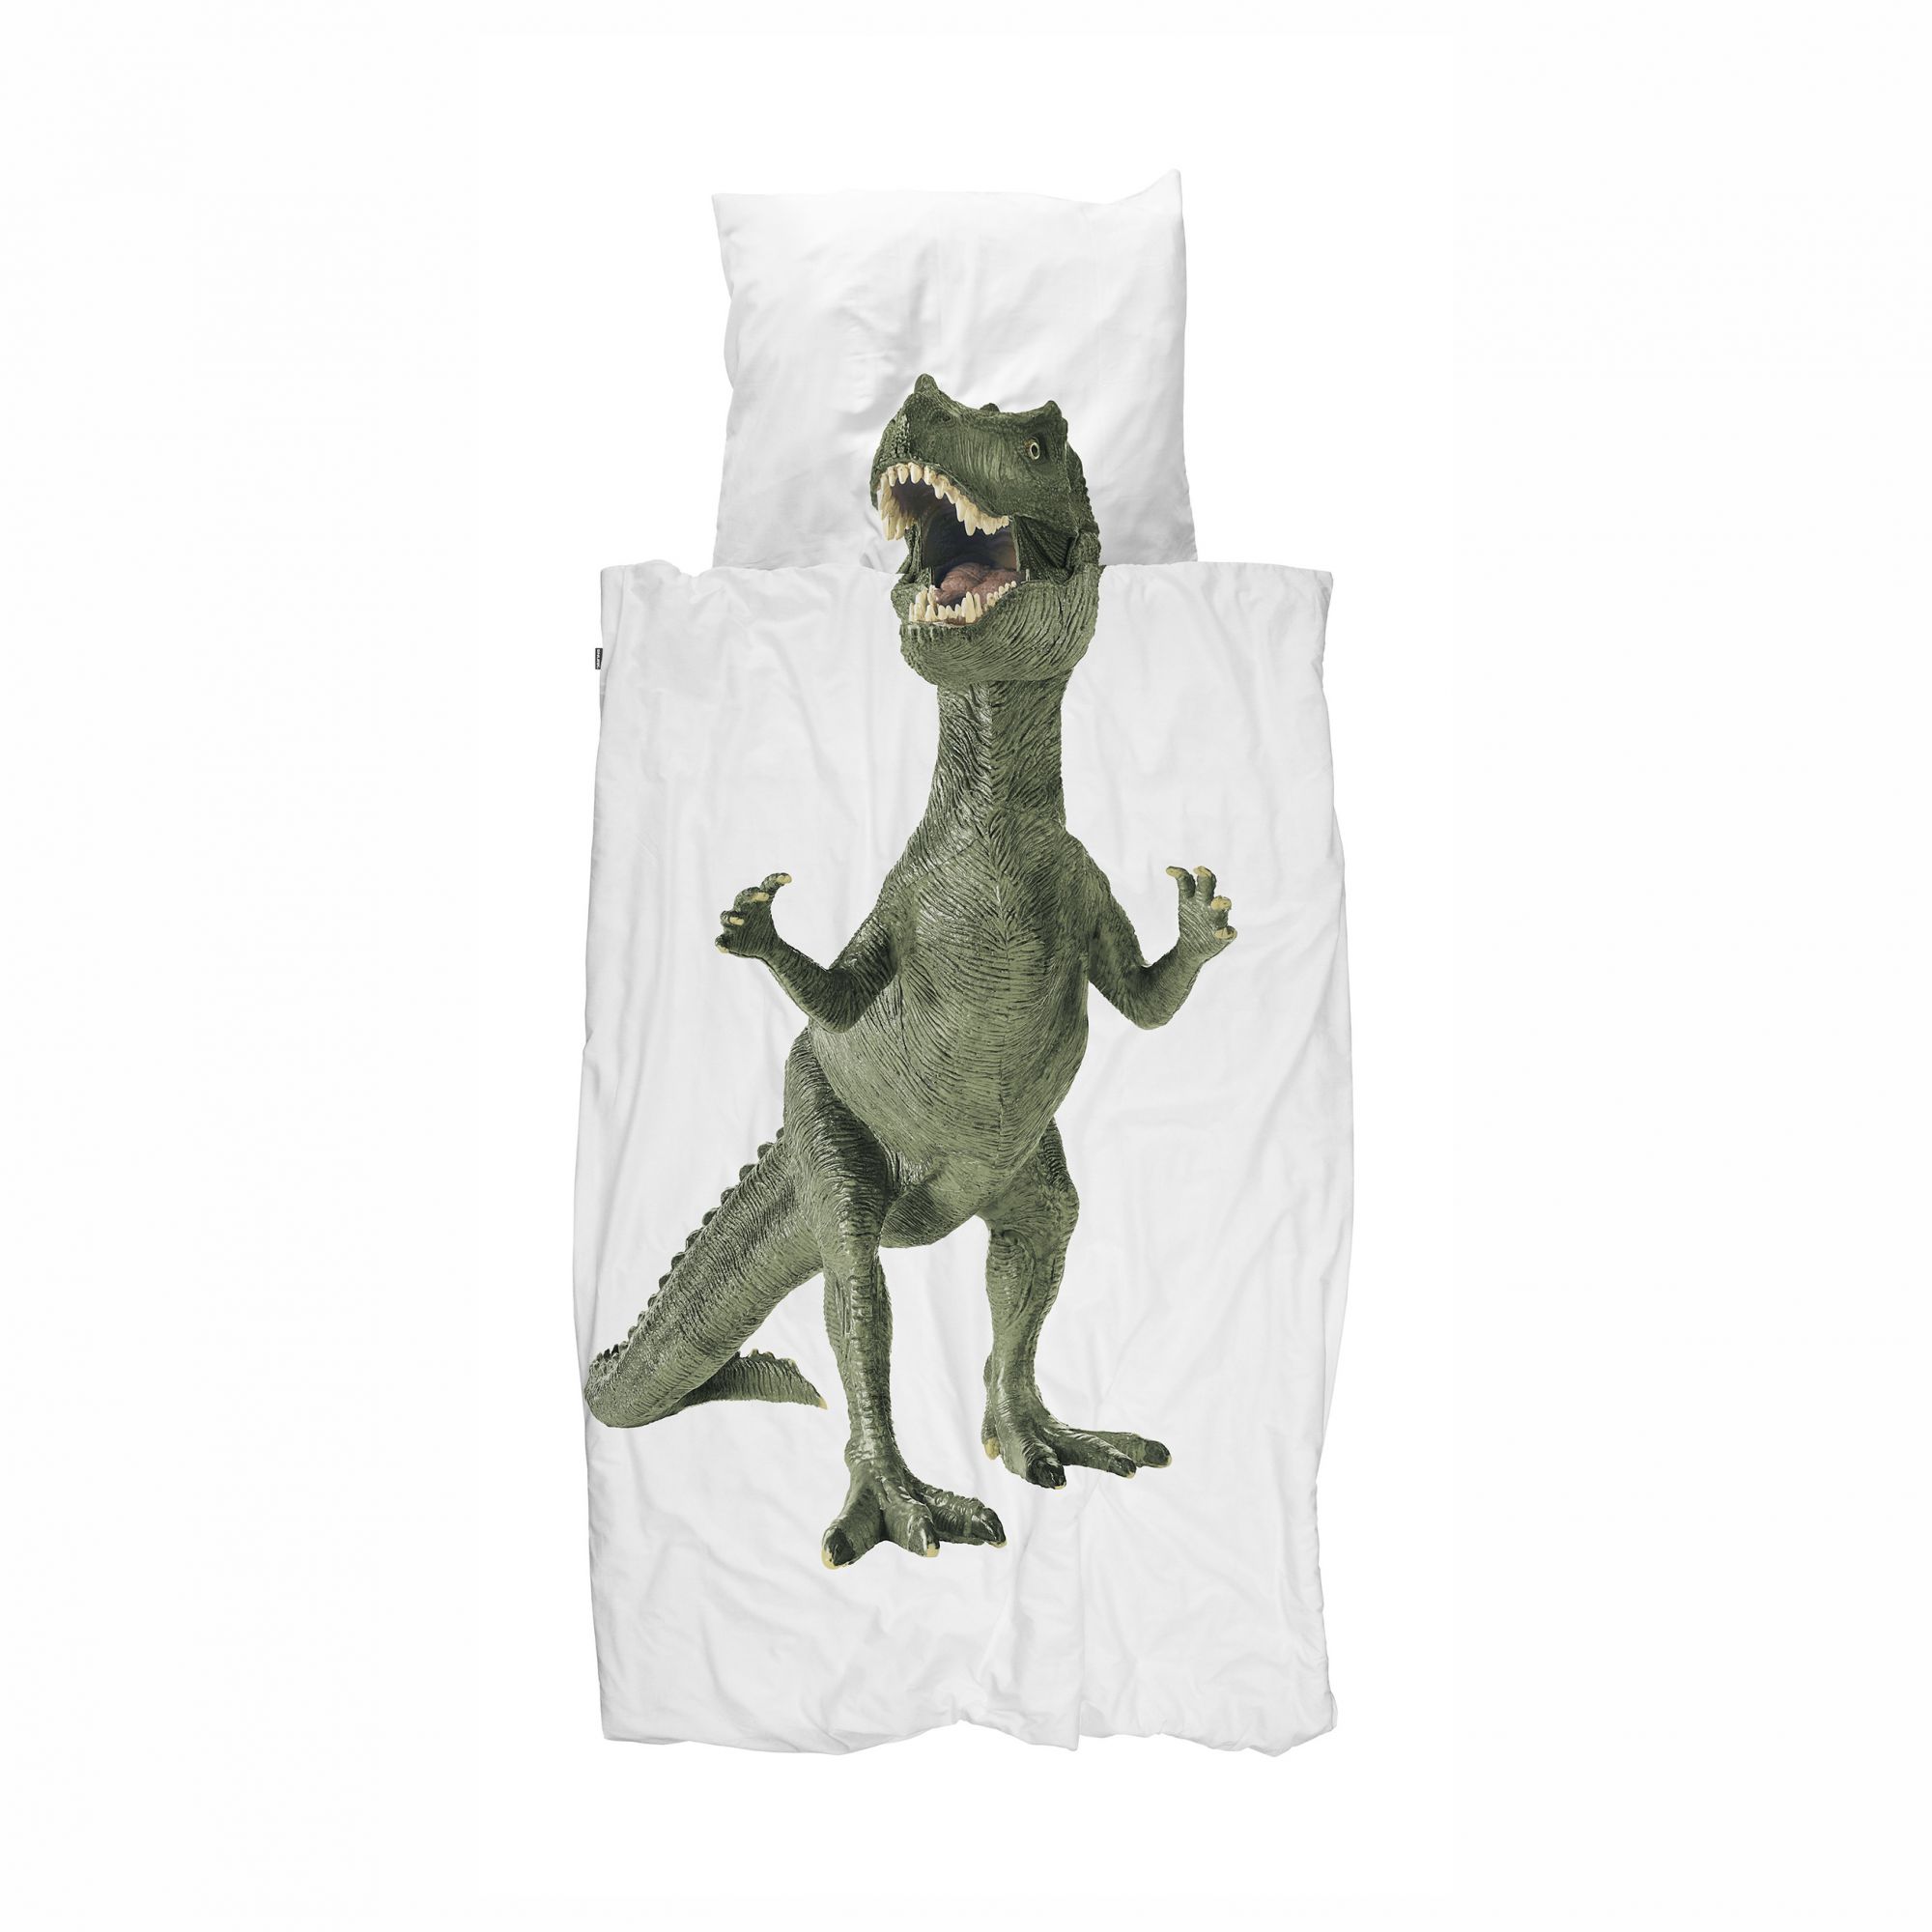 T-Rex sengetøj fra snurk i junior str.